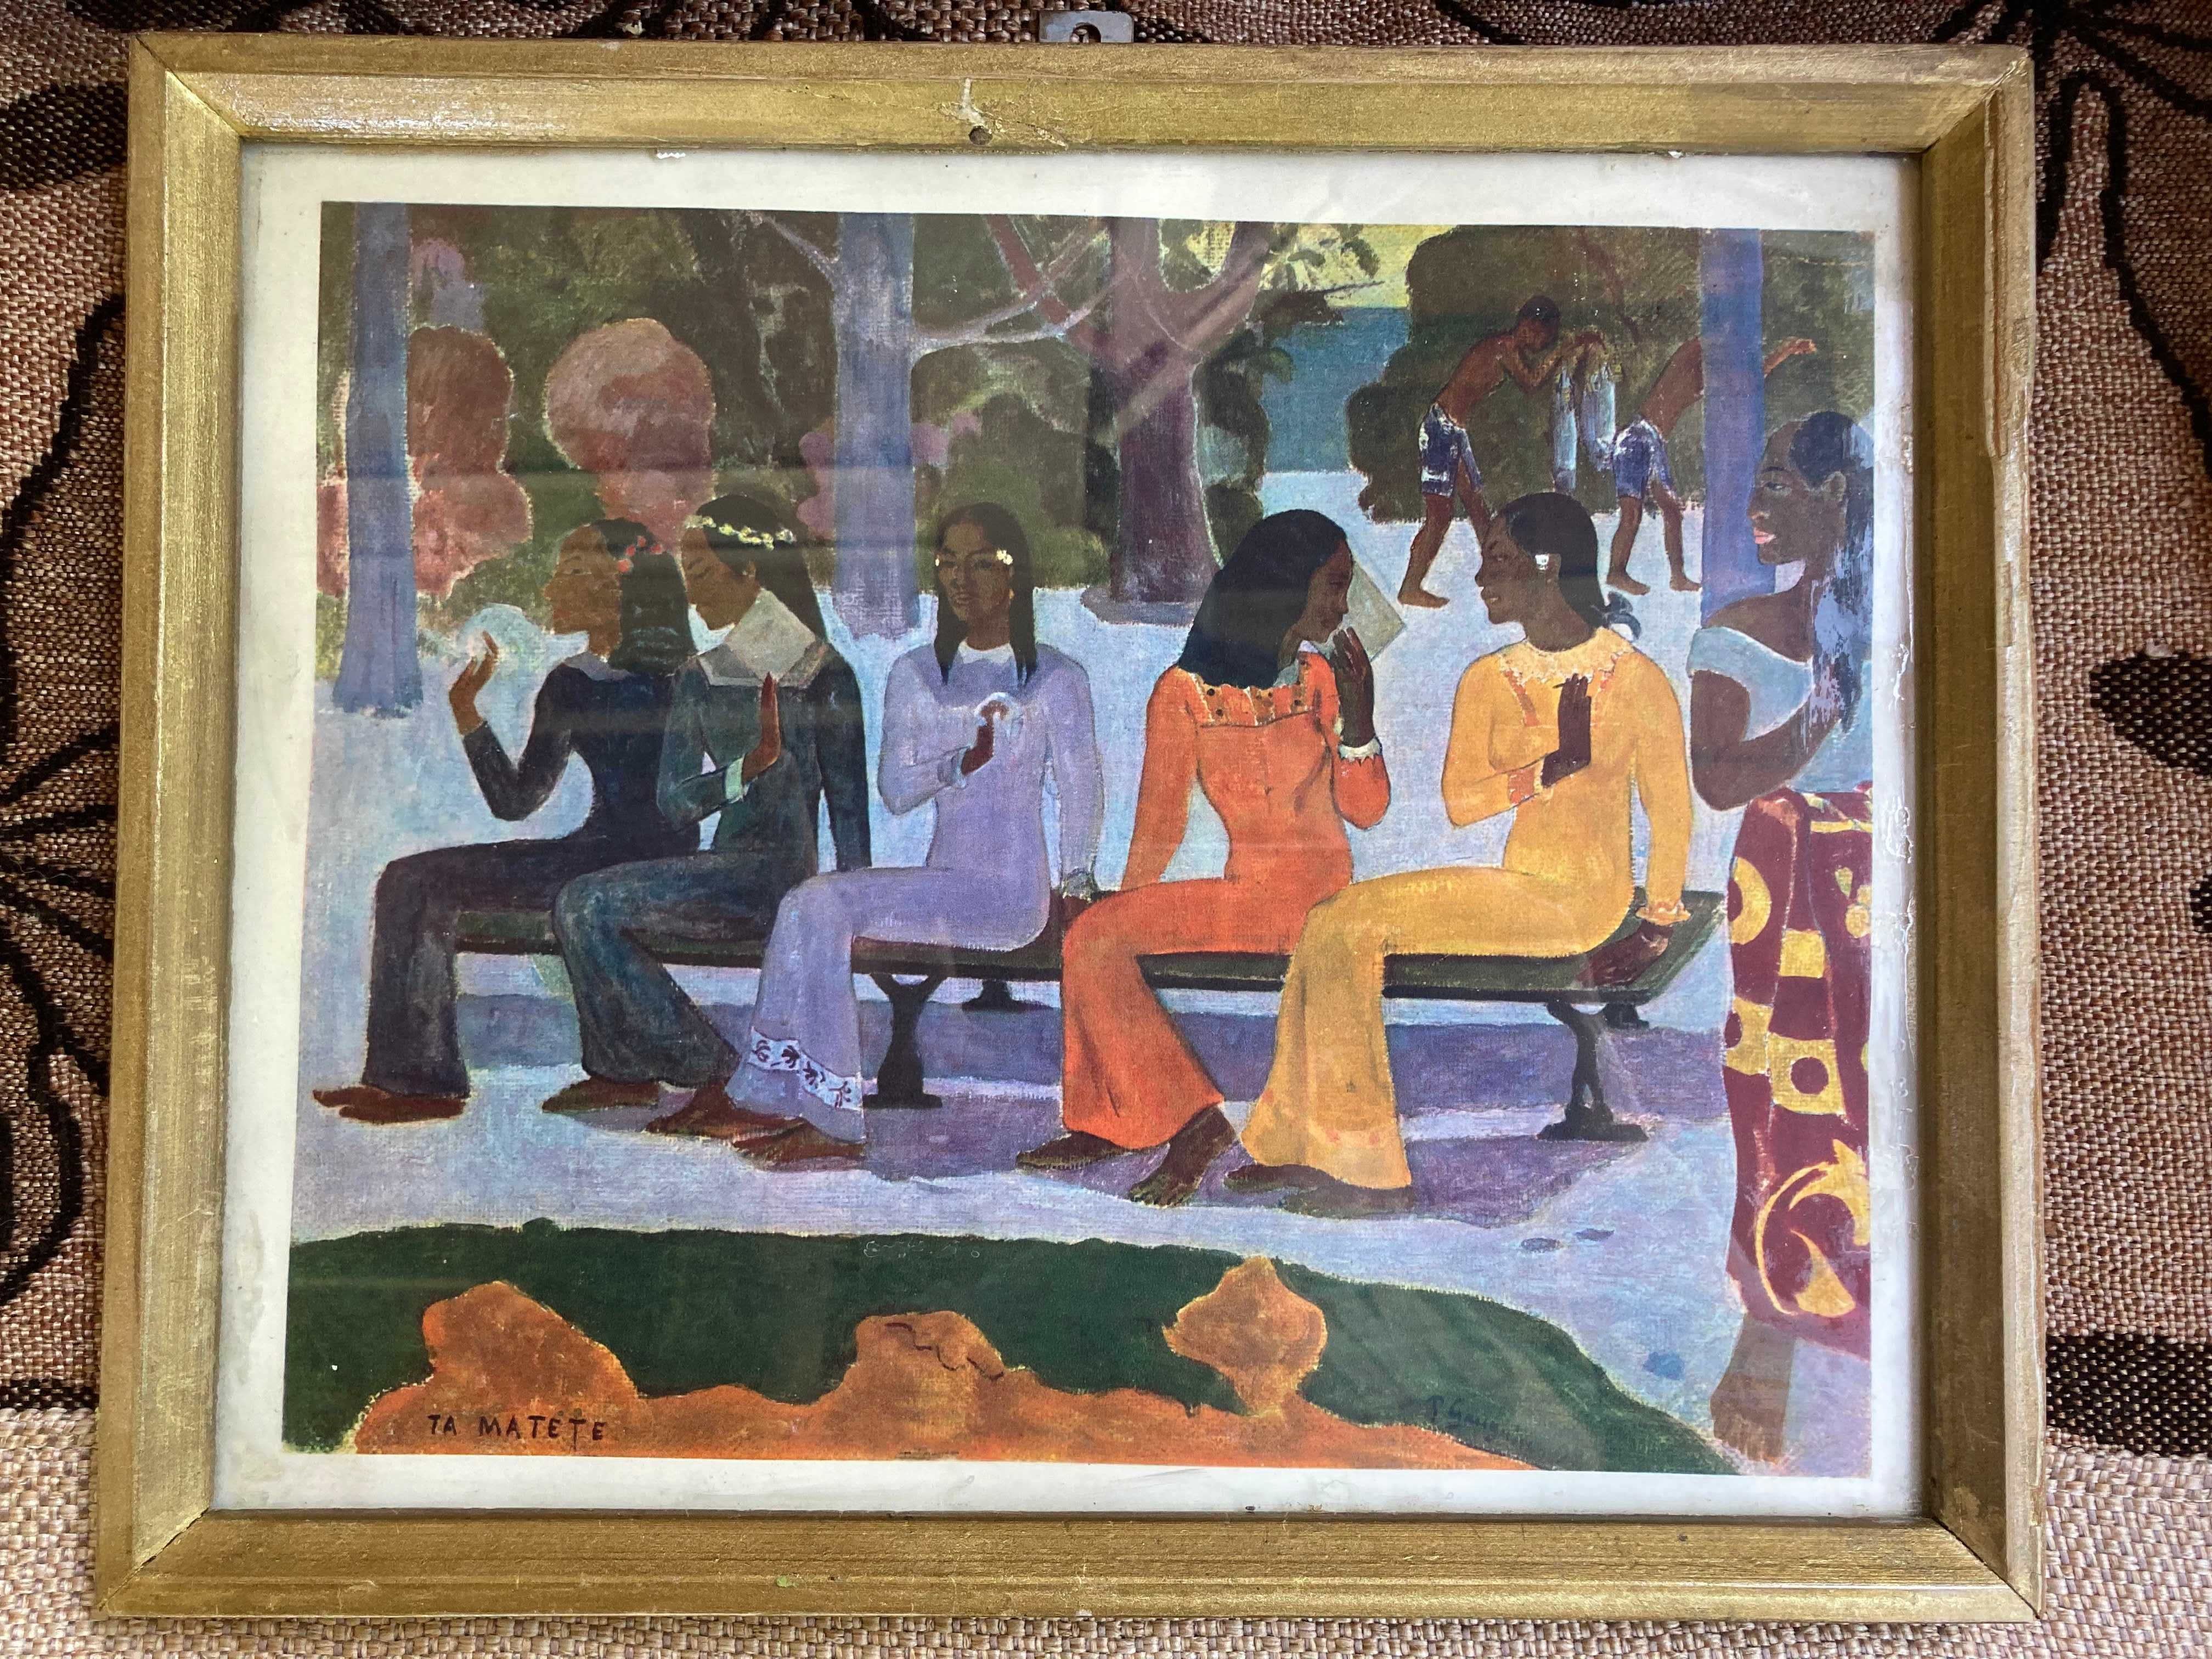 Tablou - Paul Gauguin - Ta Matete Nu vom merge la piata astazi 1892